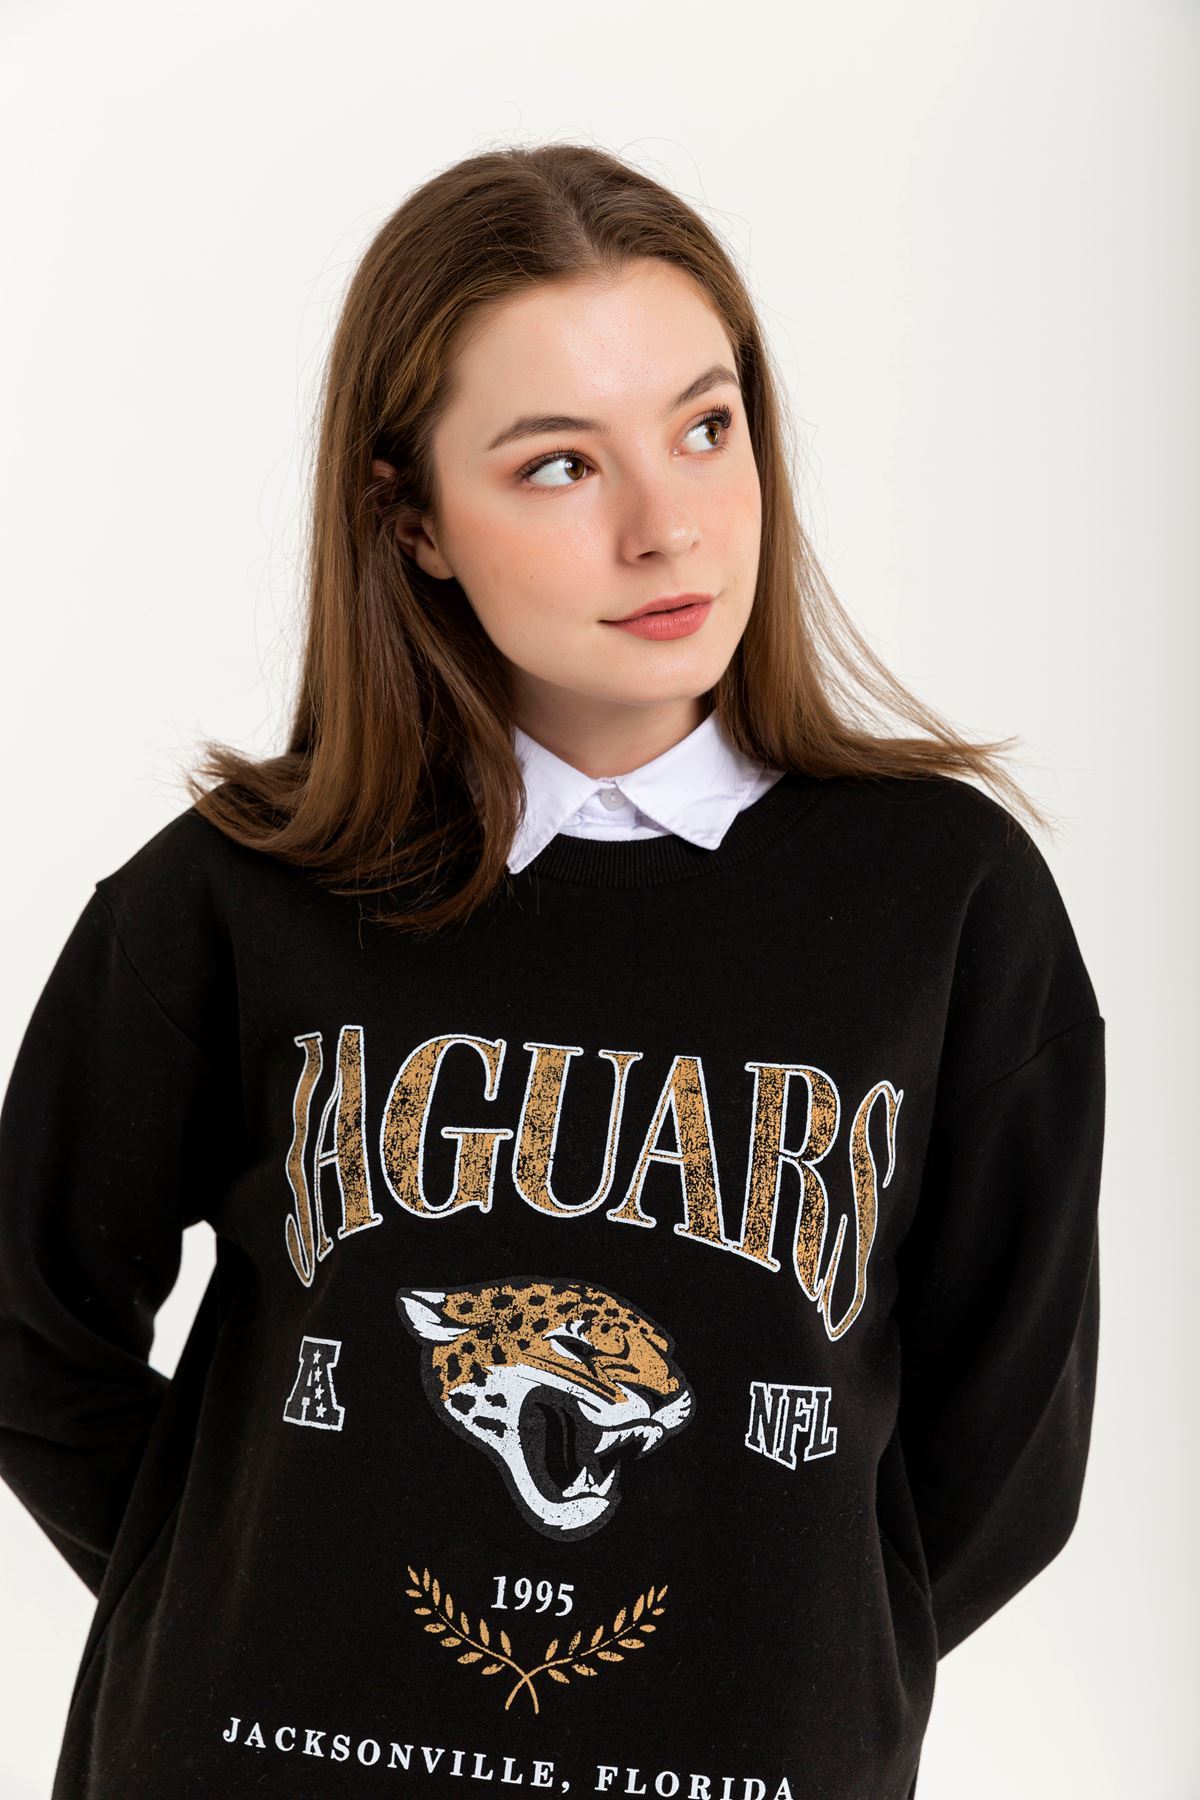 Şardonlu 3 İplik Kumaş Rahat Kalıp Jaguars Baskılı Kadın Sweatshirt-Siyah